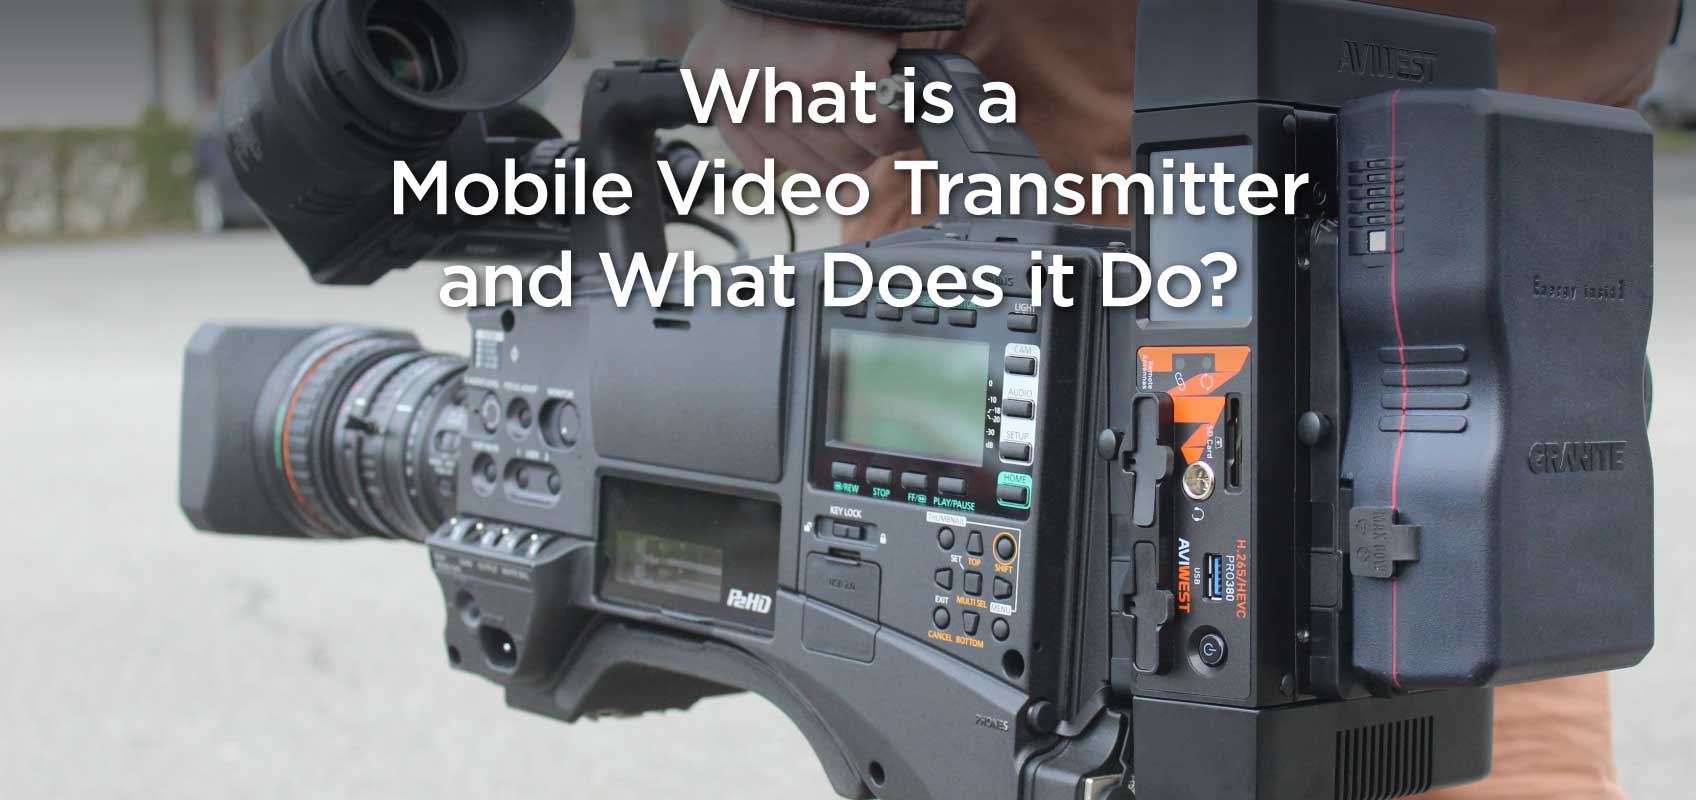 Mobile Video Transmitter